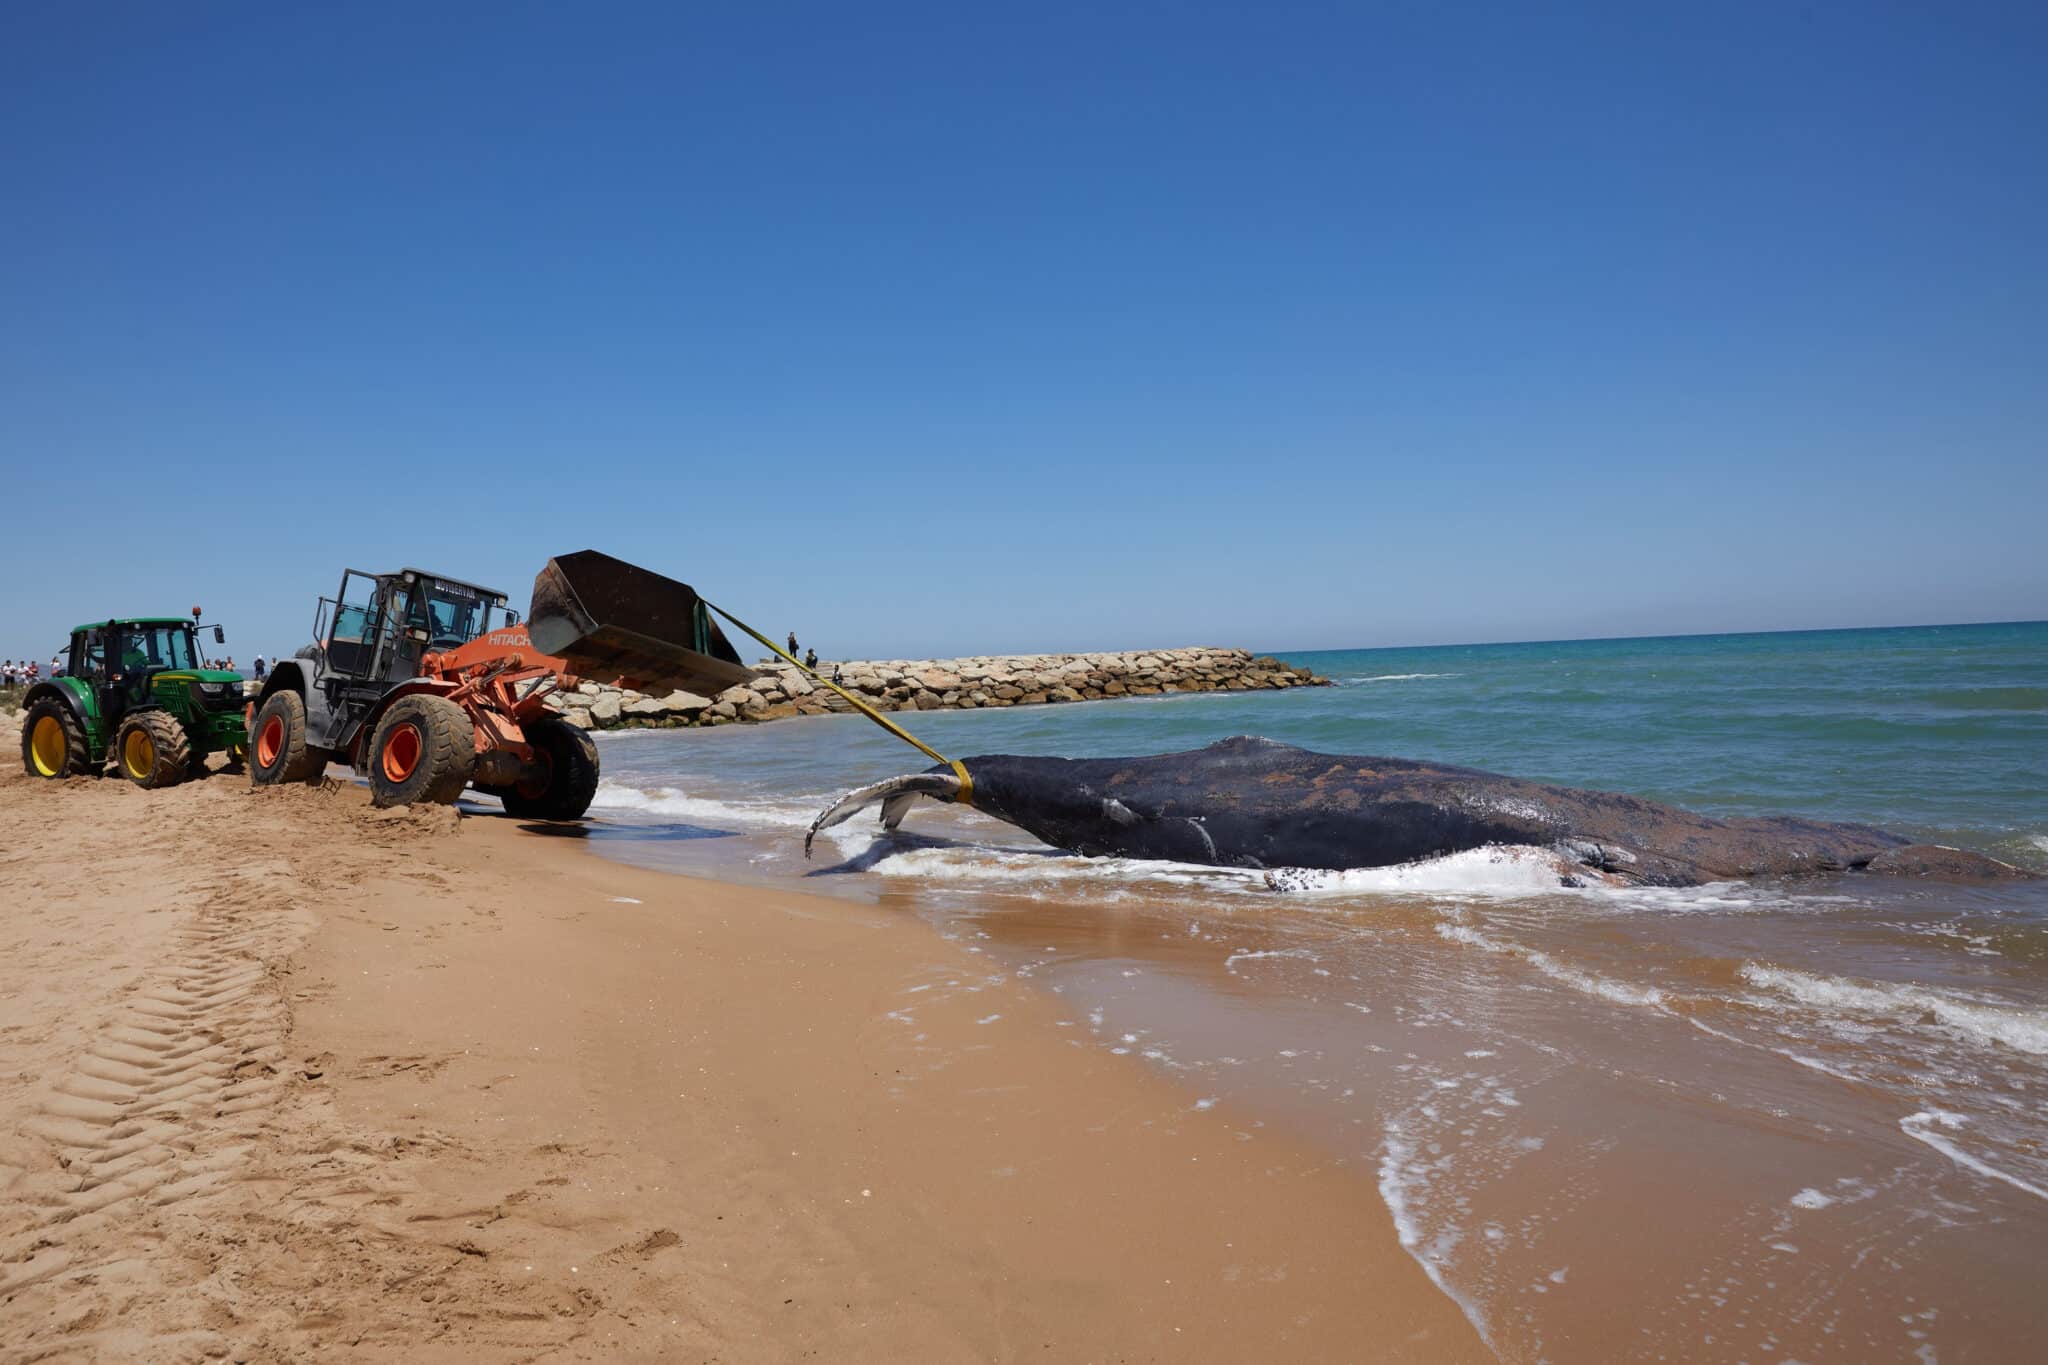 Una ballena de 12 metros y 25 toneladas que fue avistada en Mallorca ha muerto junto a la costa del municipio valenciano de Tavernes de la Valldigna